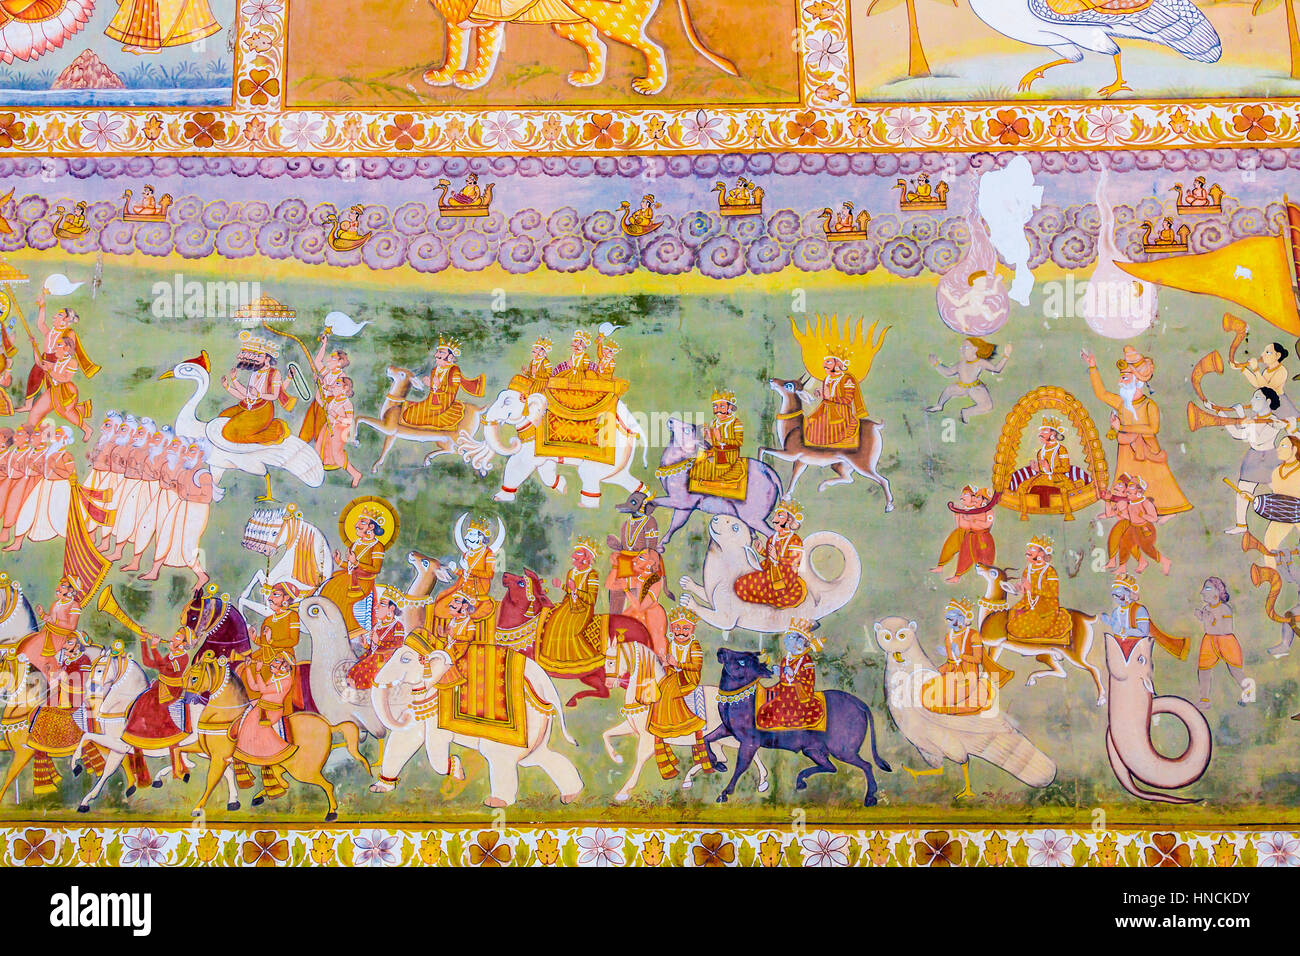 Ein Fresko außerhalb der Mehrangarh Fort Darstellung Götter aus der hinduistischen Mythologie. Stockfoto